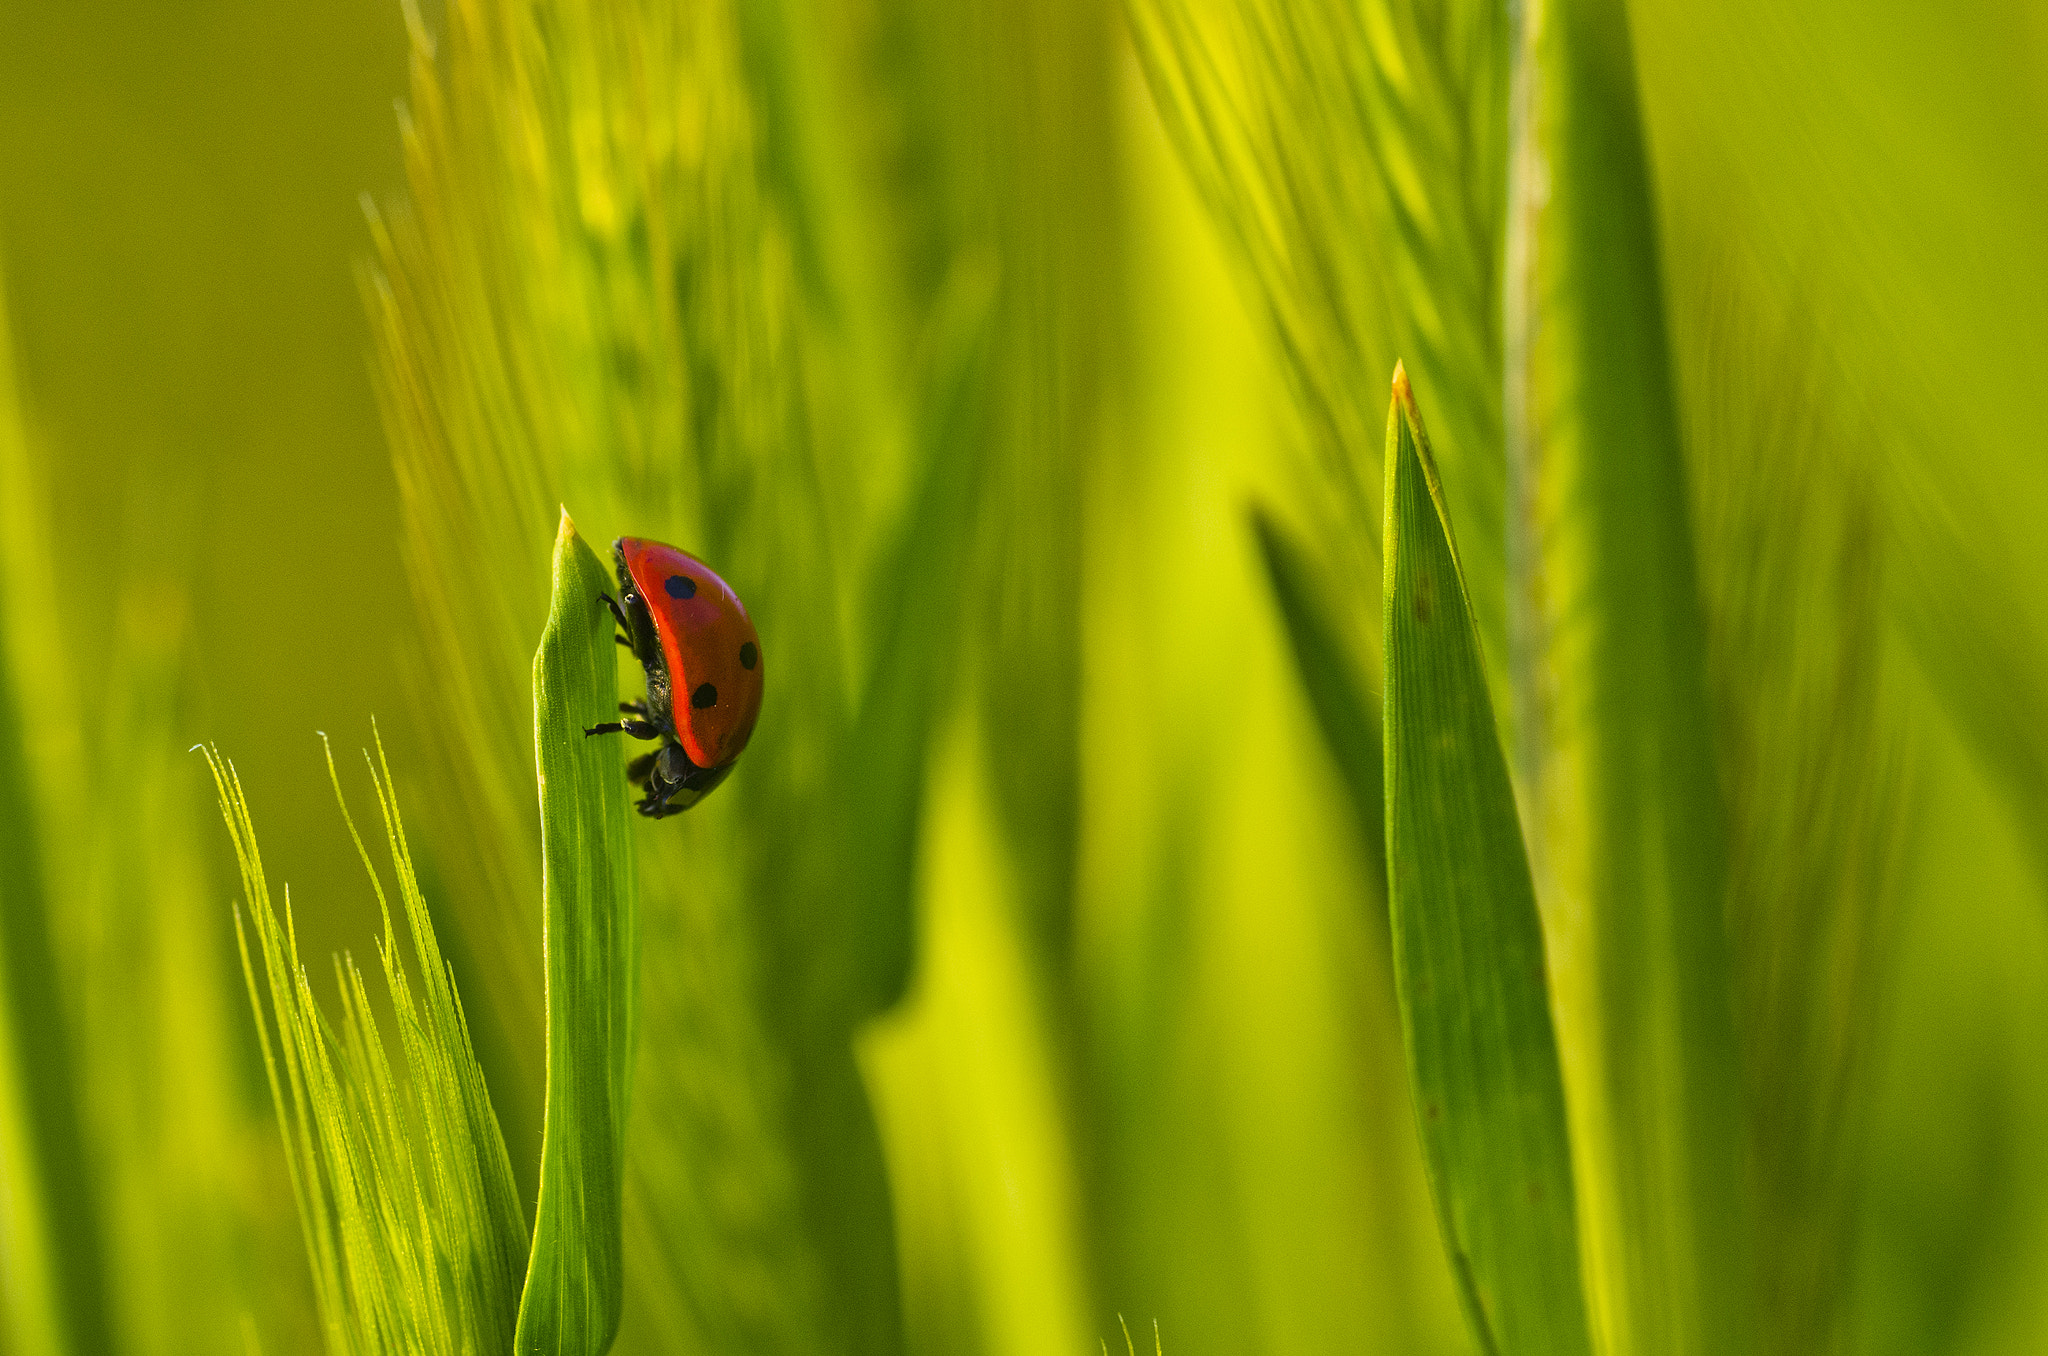 Pentax K-5 sample photo. Ladybug photography